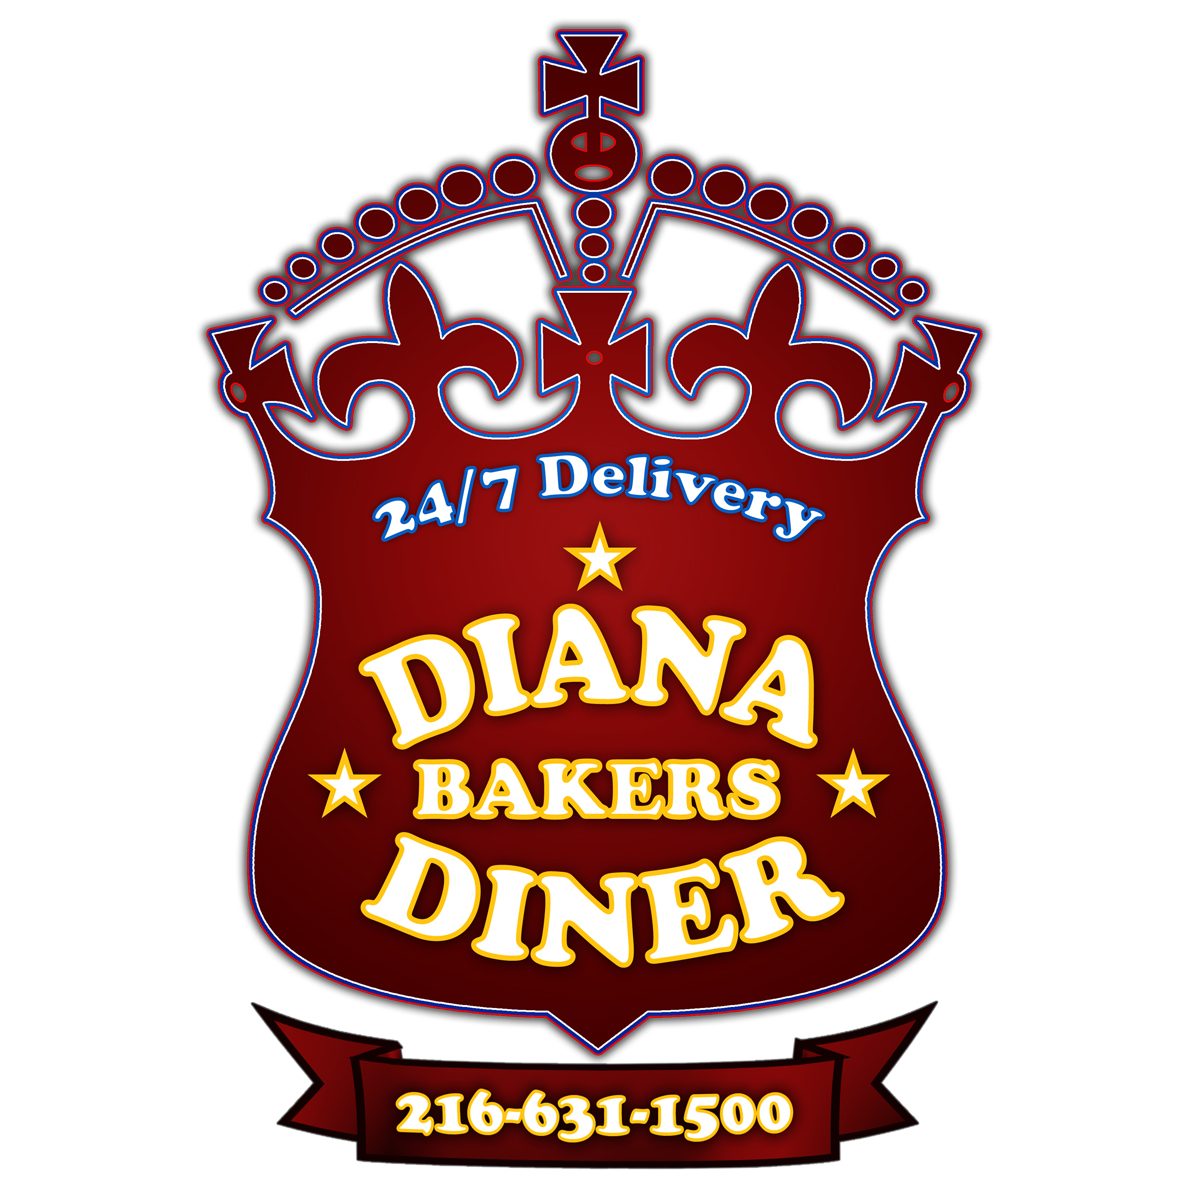 Diana Baker's Diner